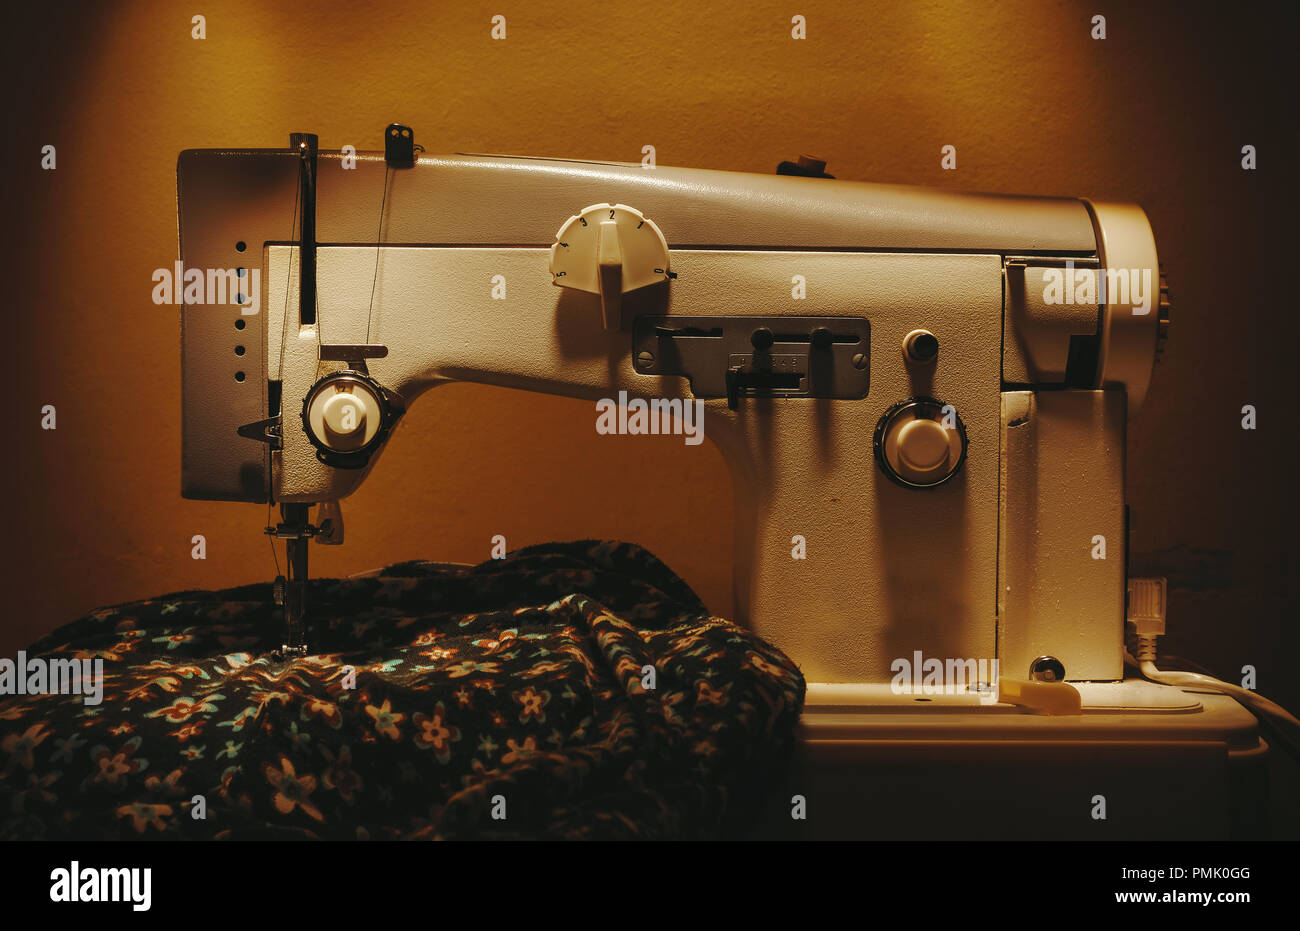 Detailansicht einer alten elektrischen Nähmaschine. Stockfoto